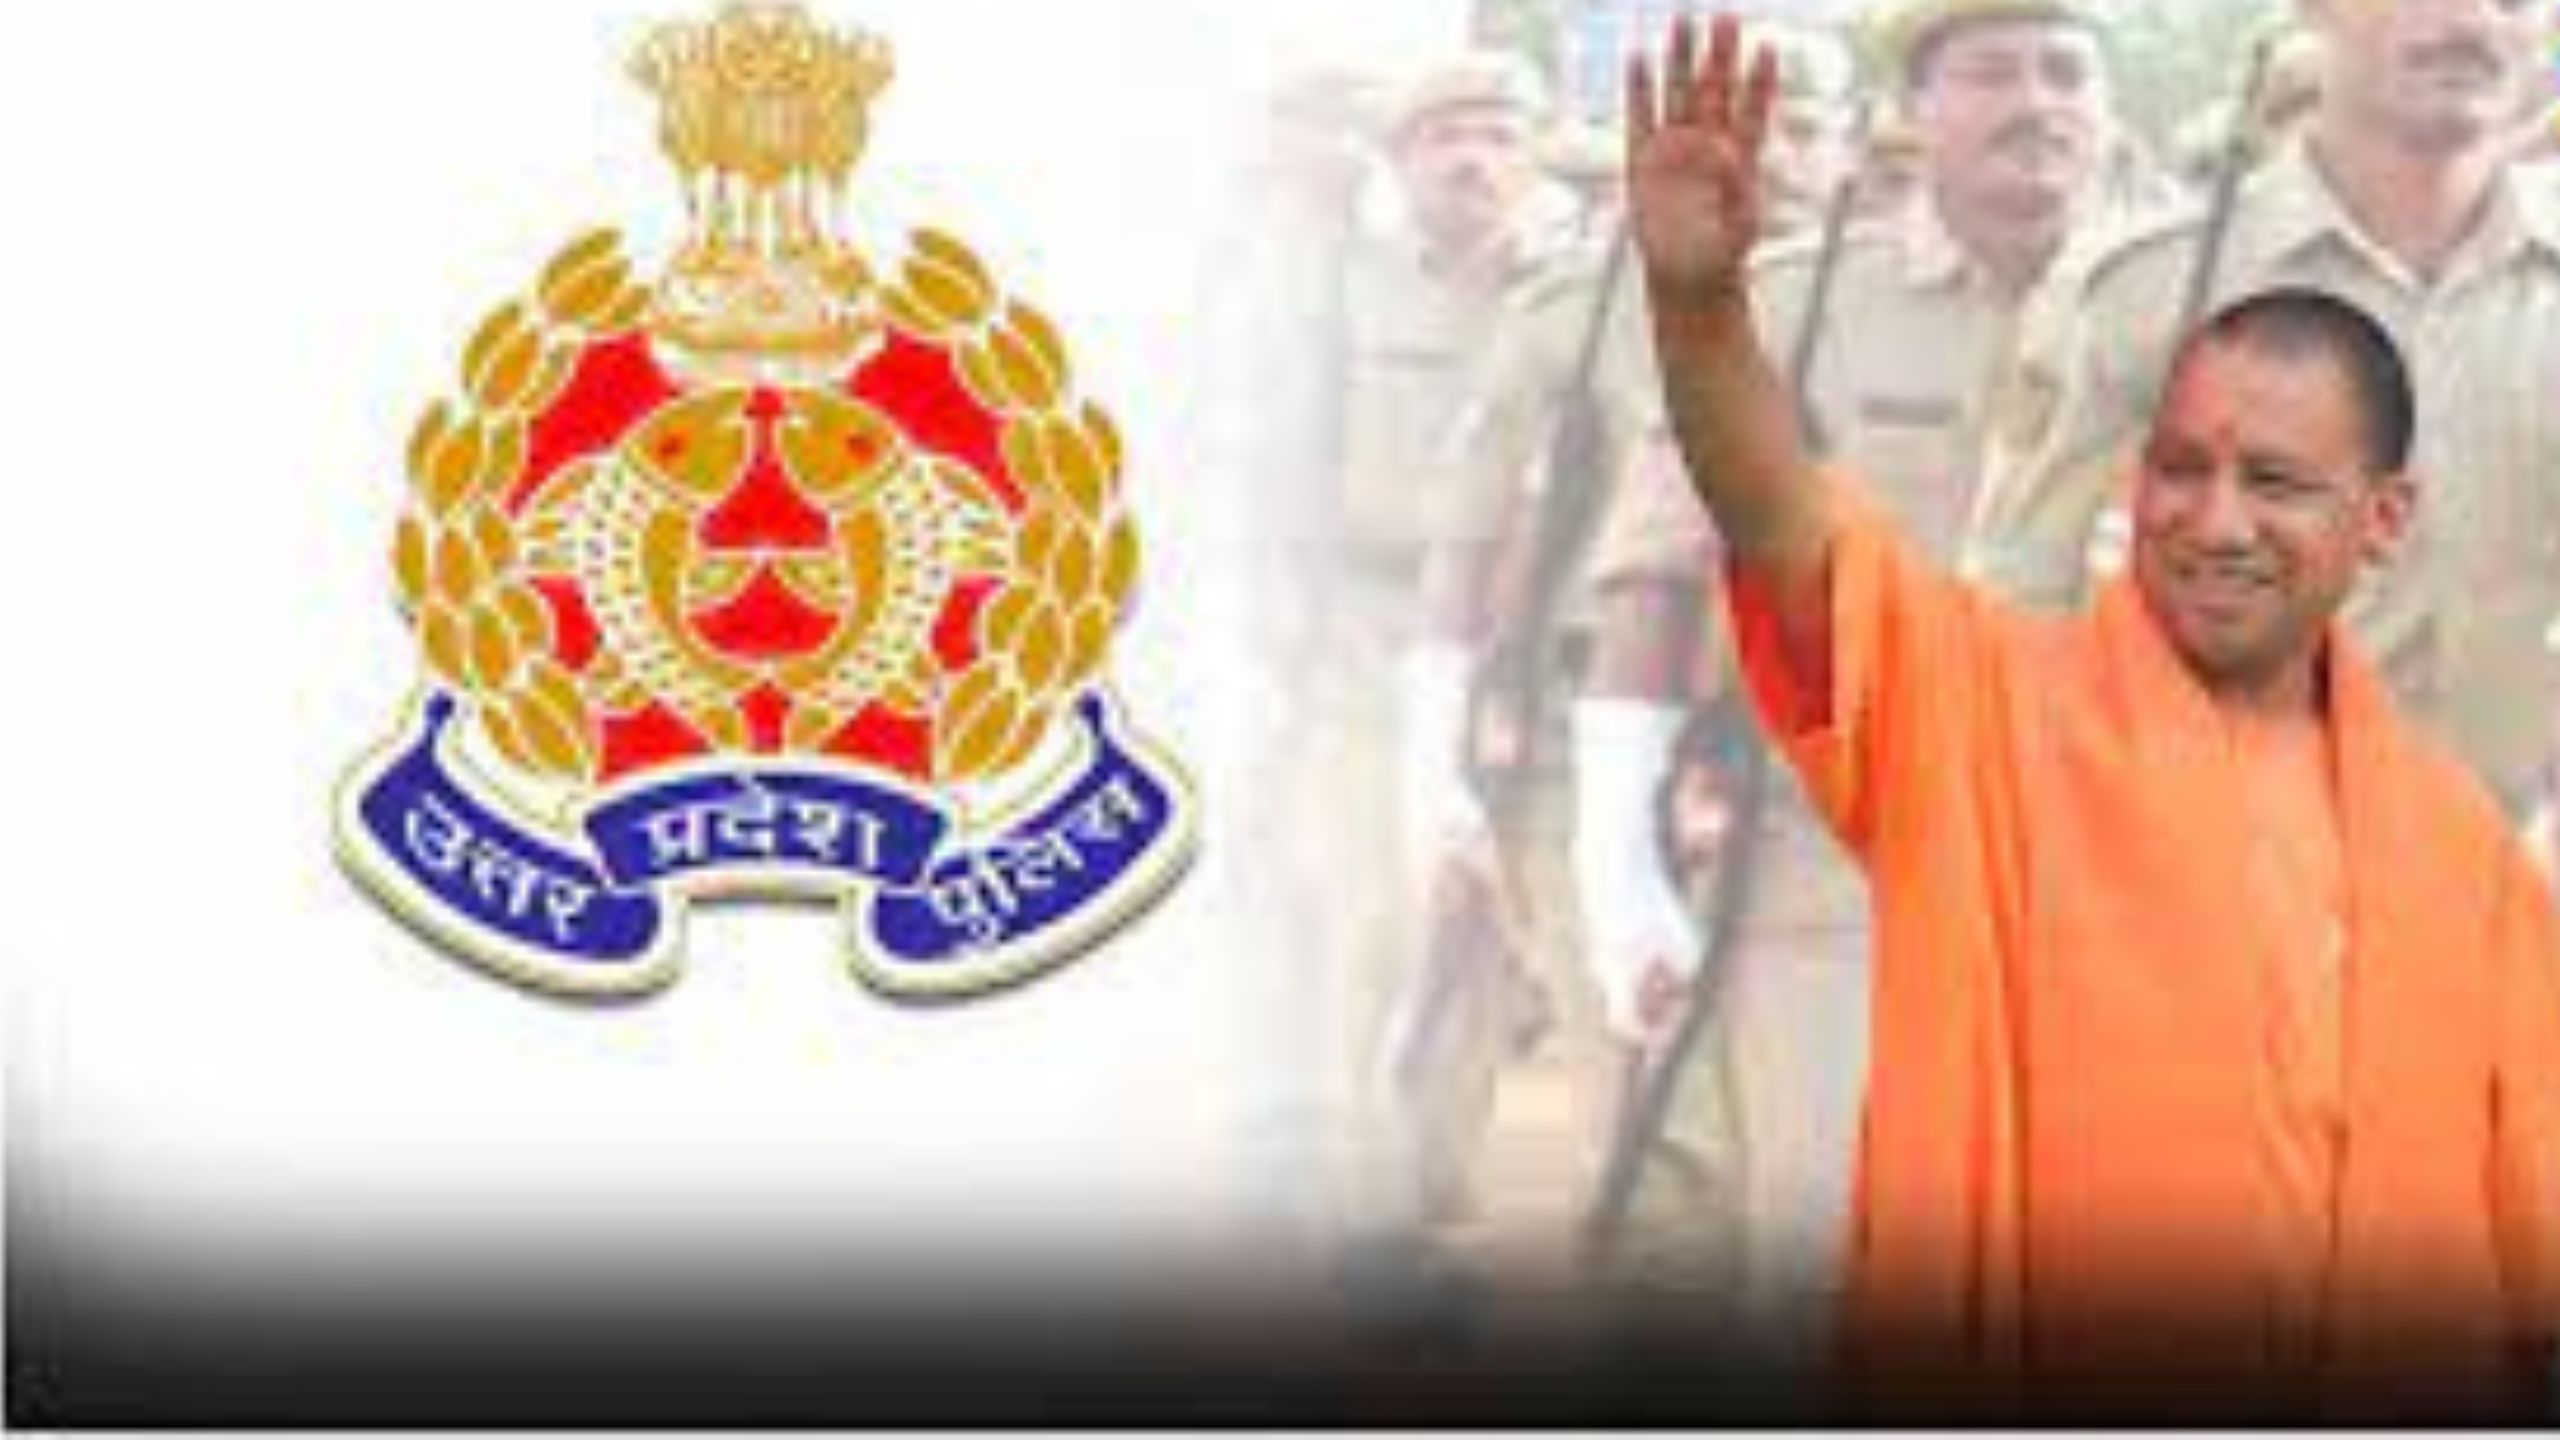 UP Police Bharti परीक्षा निरस्त, STF को सौंपी गई जांच; CM योगी ट्वीट कर बोले- आरोपी बख्शे नहीं जाएंगे